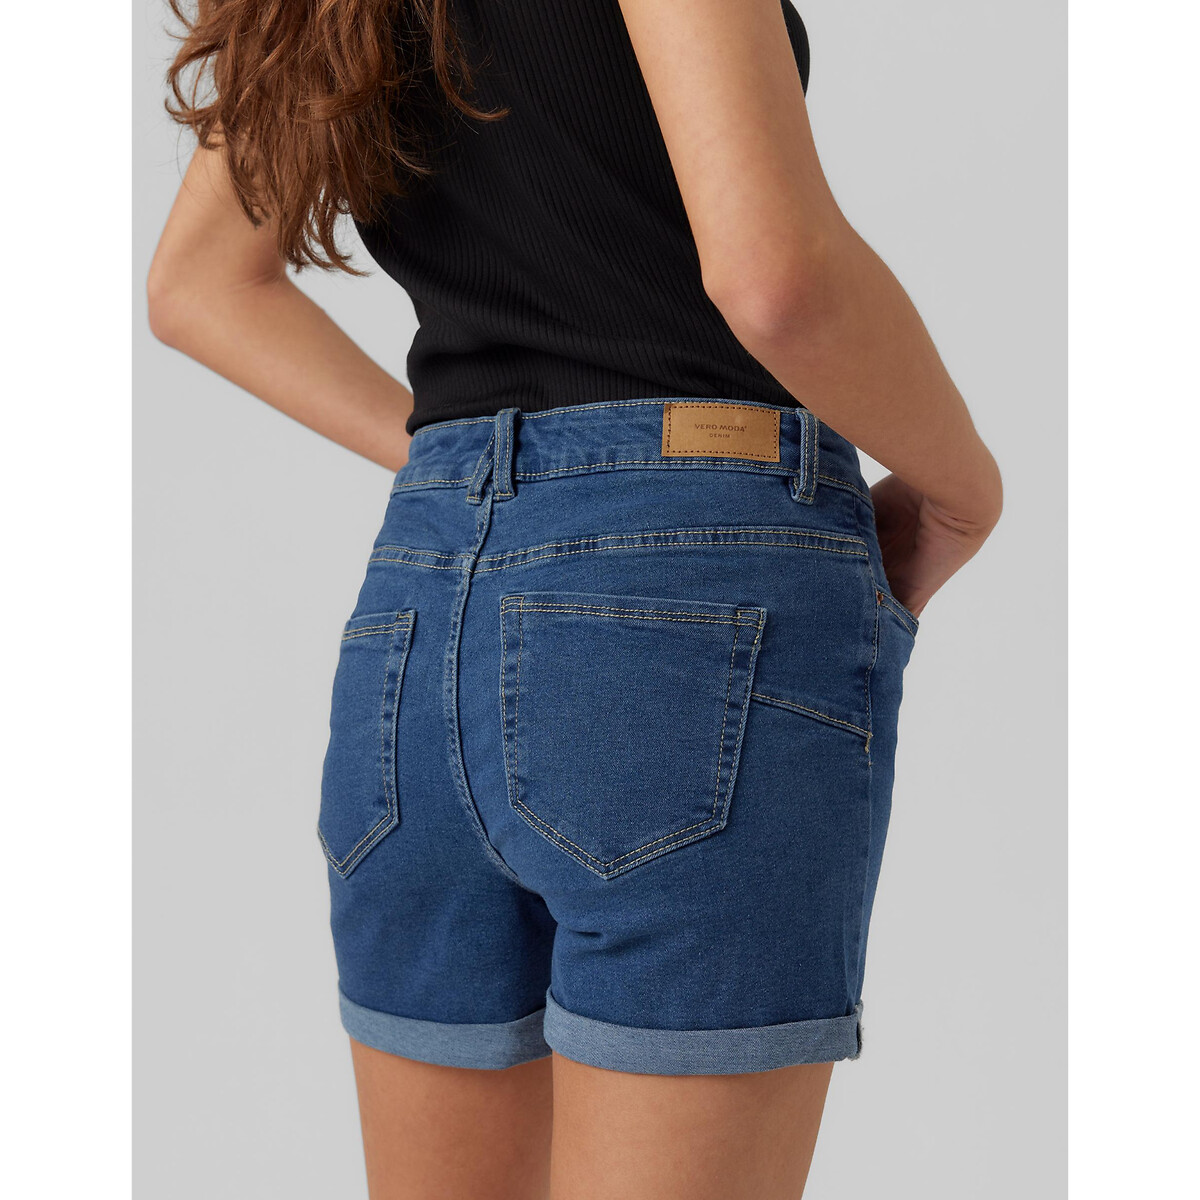 Шорты Из джинсовой ткани XL синий LaRedoute, размер XL - фото 2